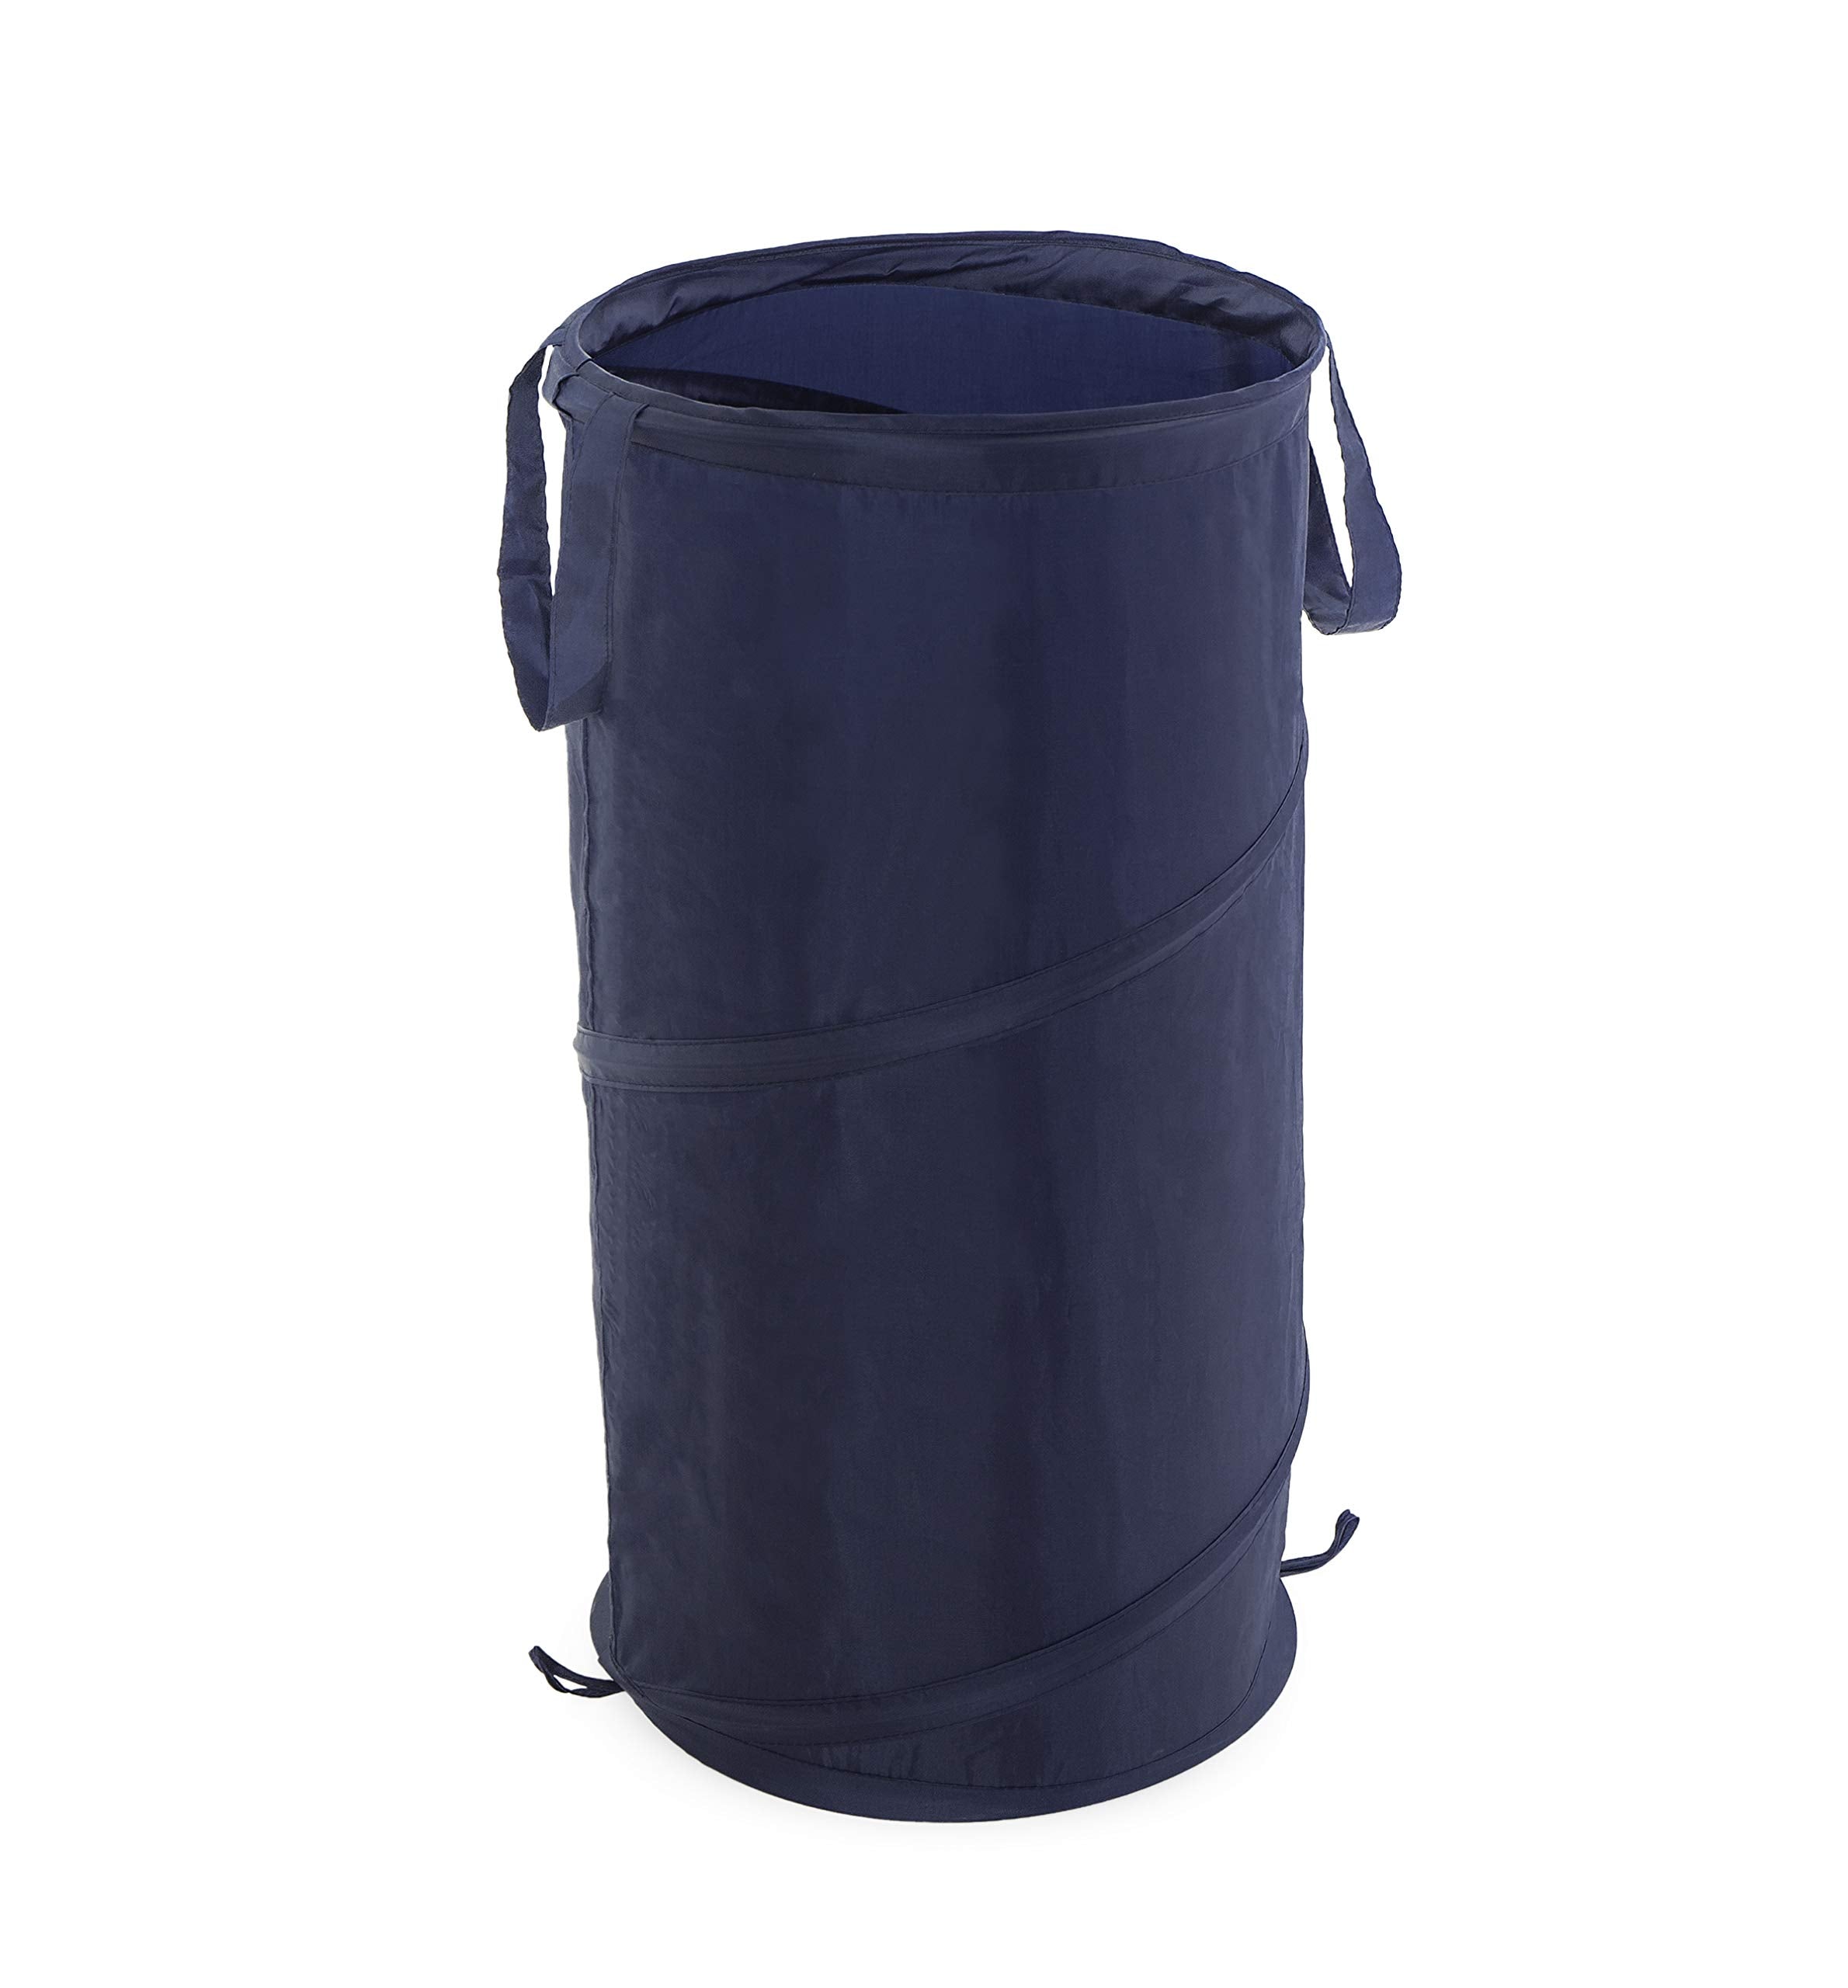 Pop-Up Slim Spiral Laundry Hamper Bag Polyester - 25 Inch - Smart Design® 2